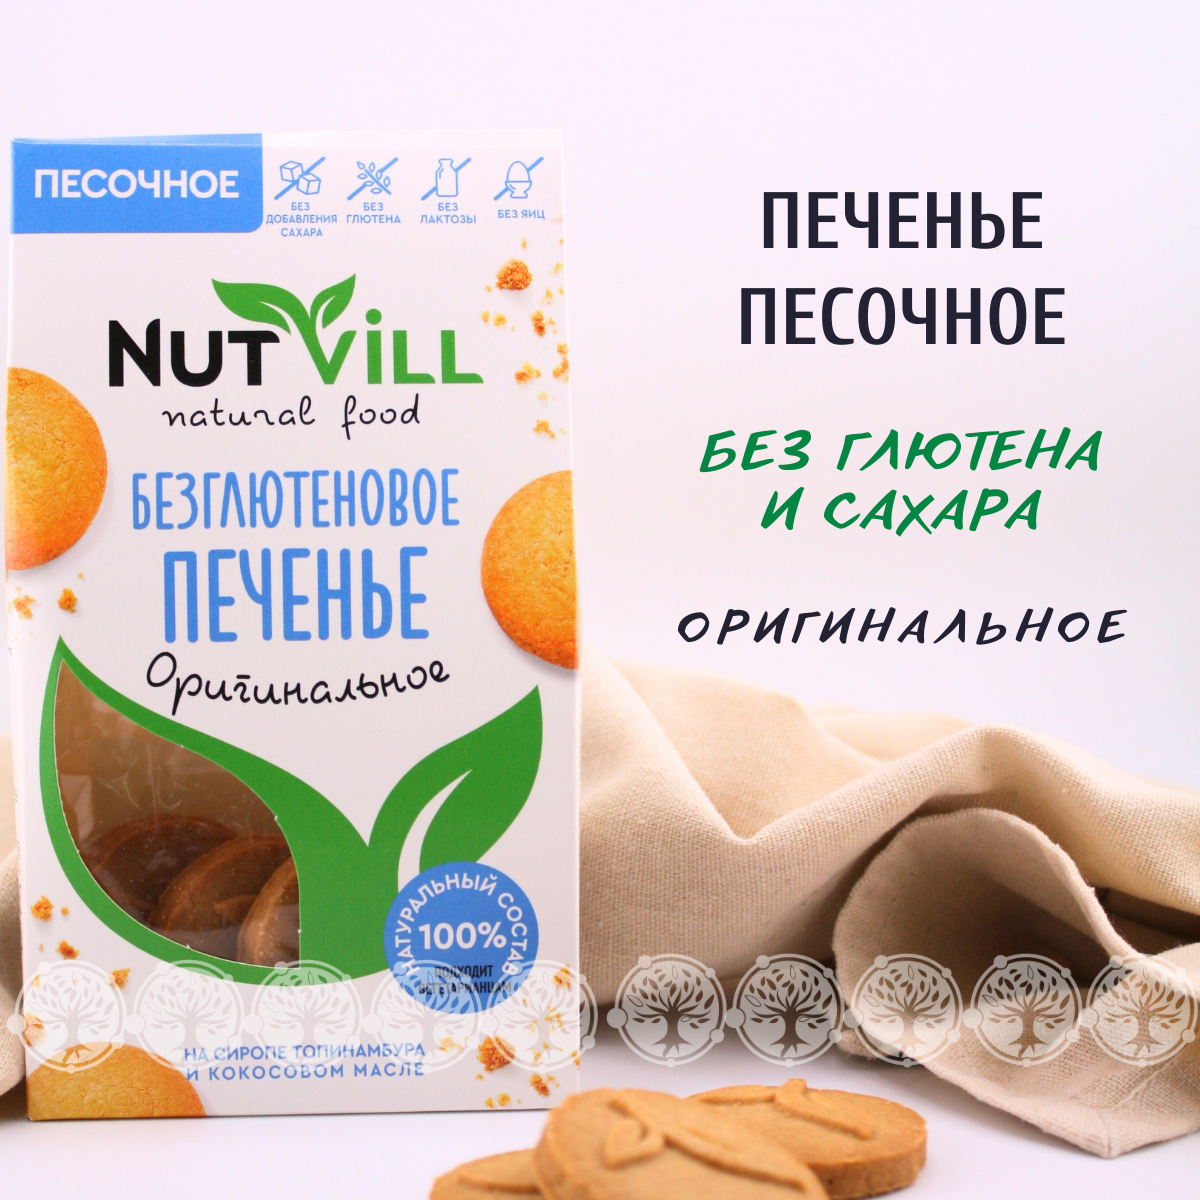 Печенье NutVill песочное "Оригинальное" безглютеновое, 100 г